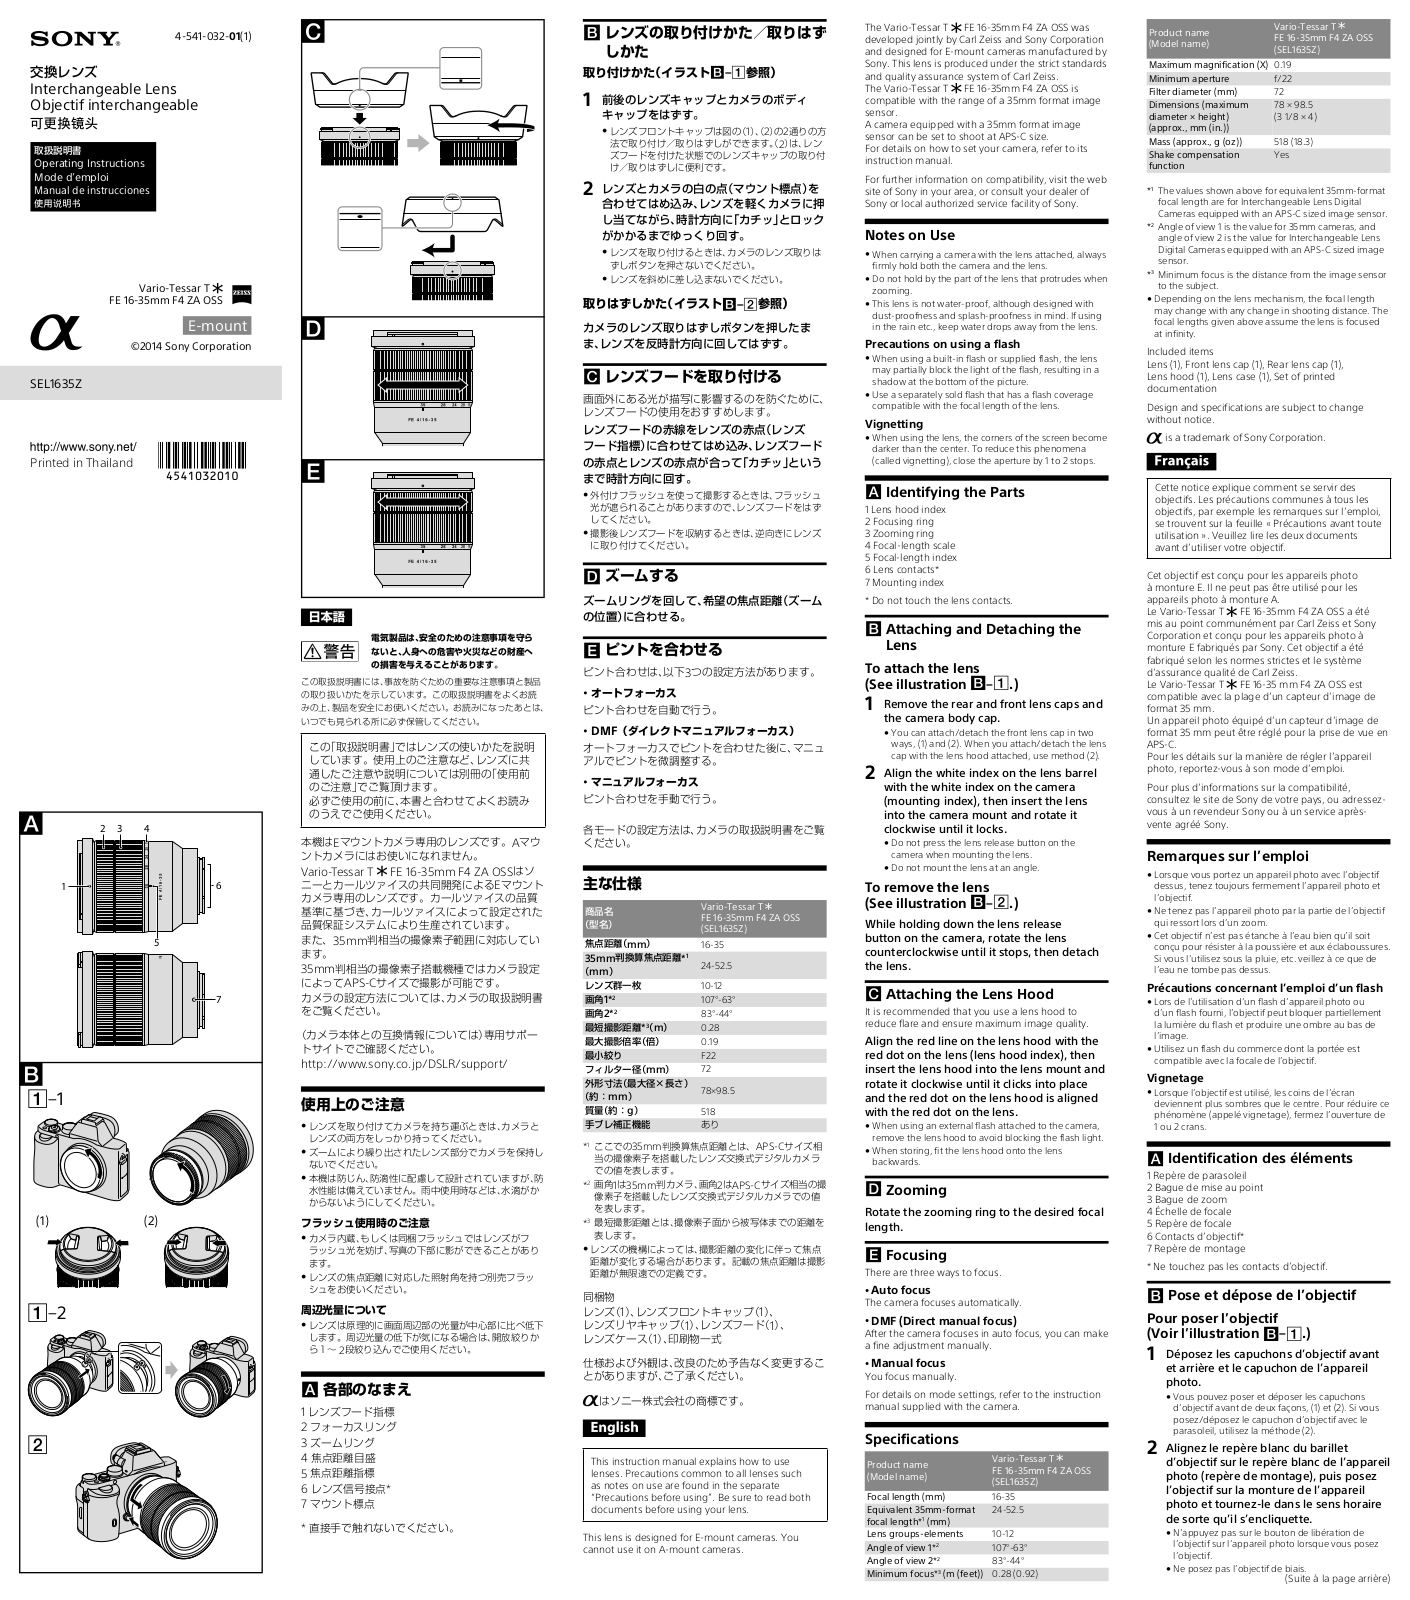 SONY SEL1635Z User Manual